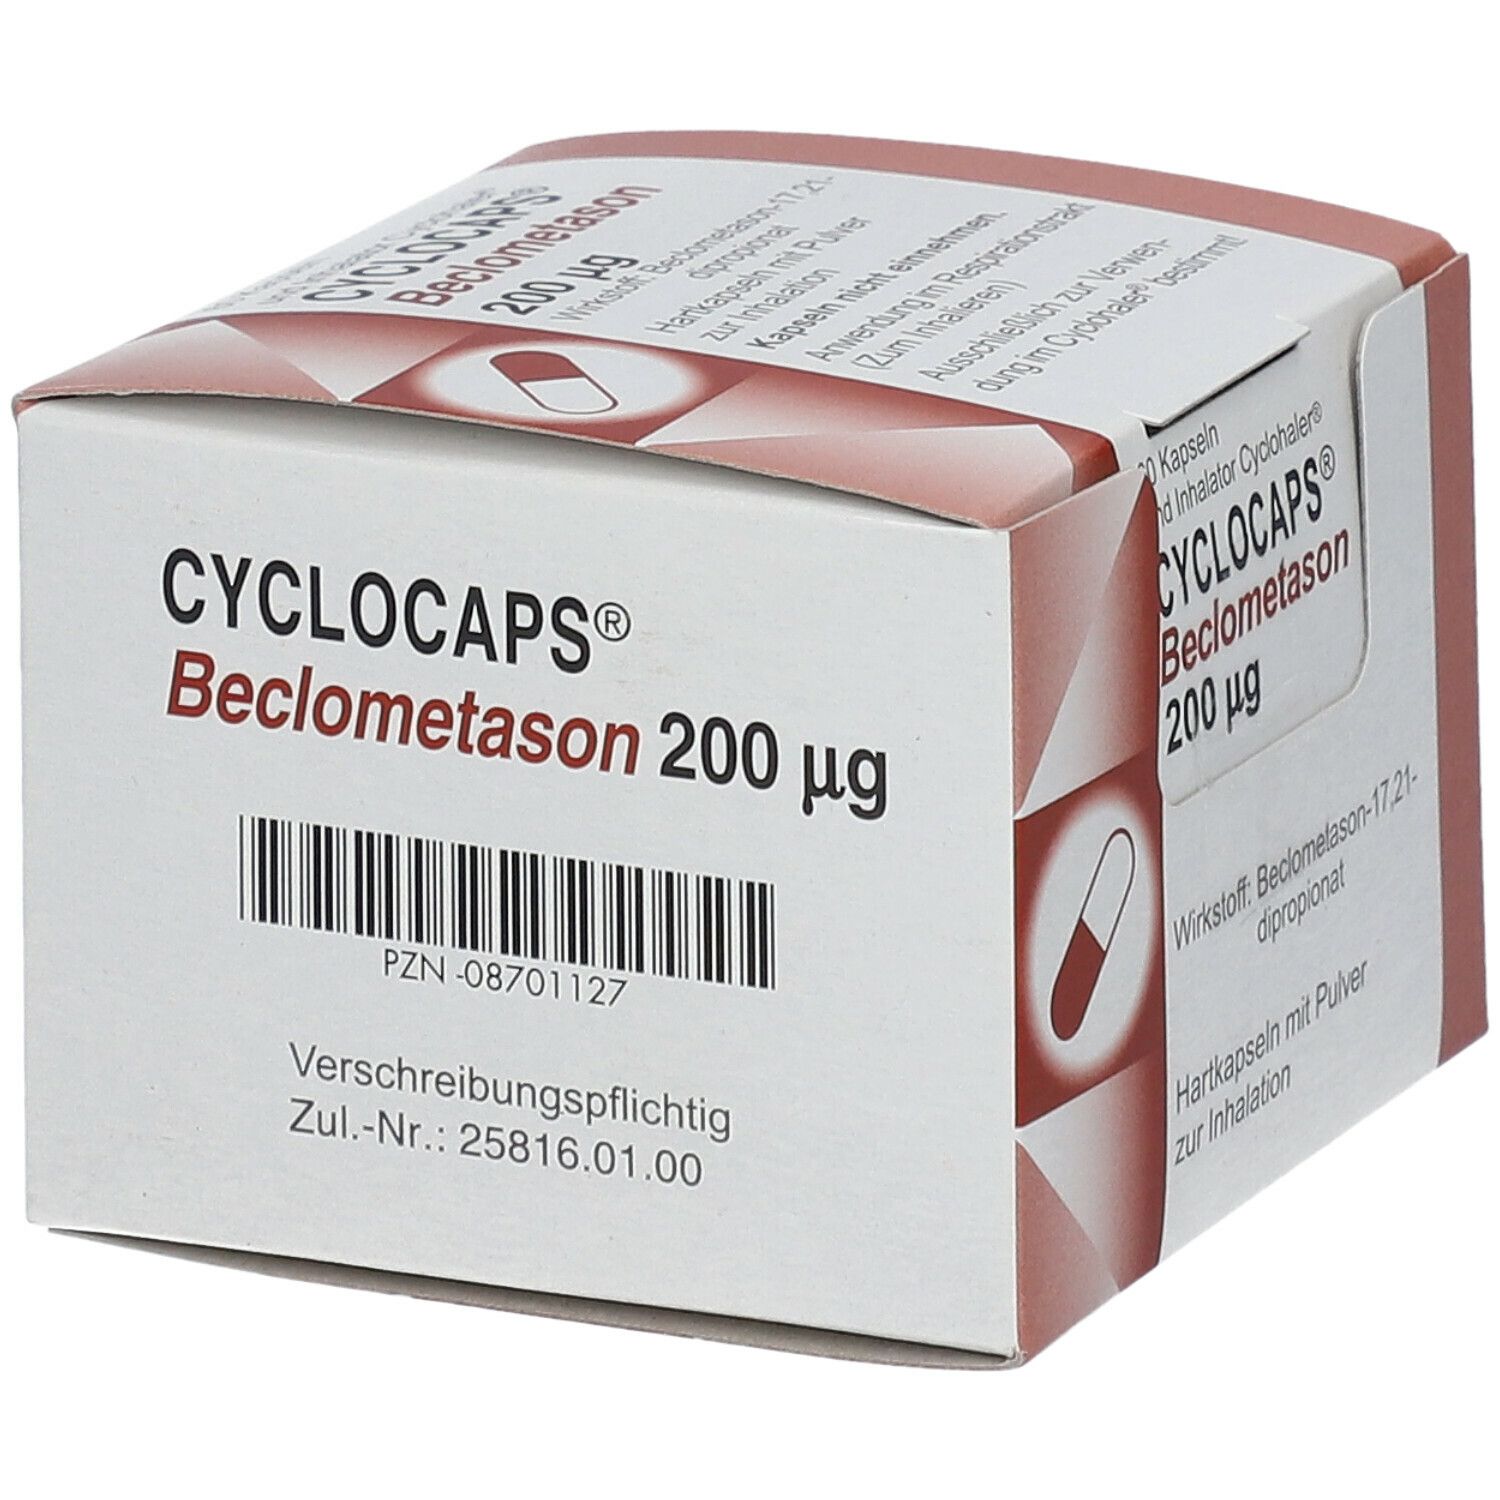 Cyclocaps Beclometason 200ug Inh.Kaps.+Cycloh.